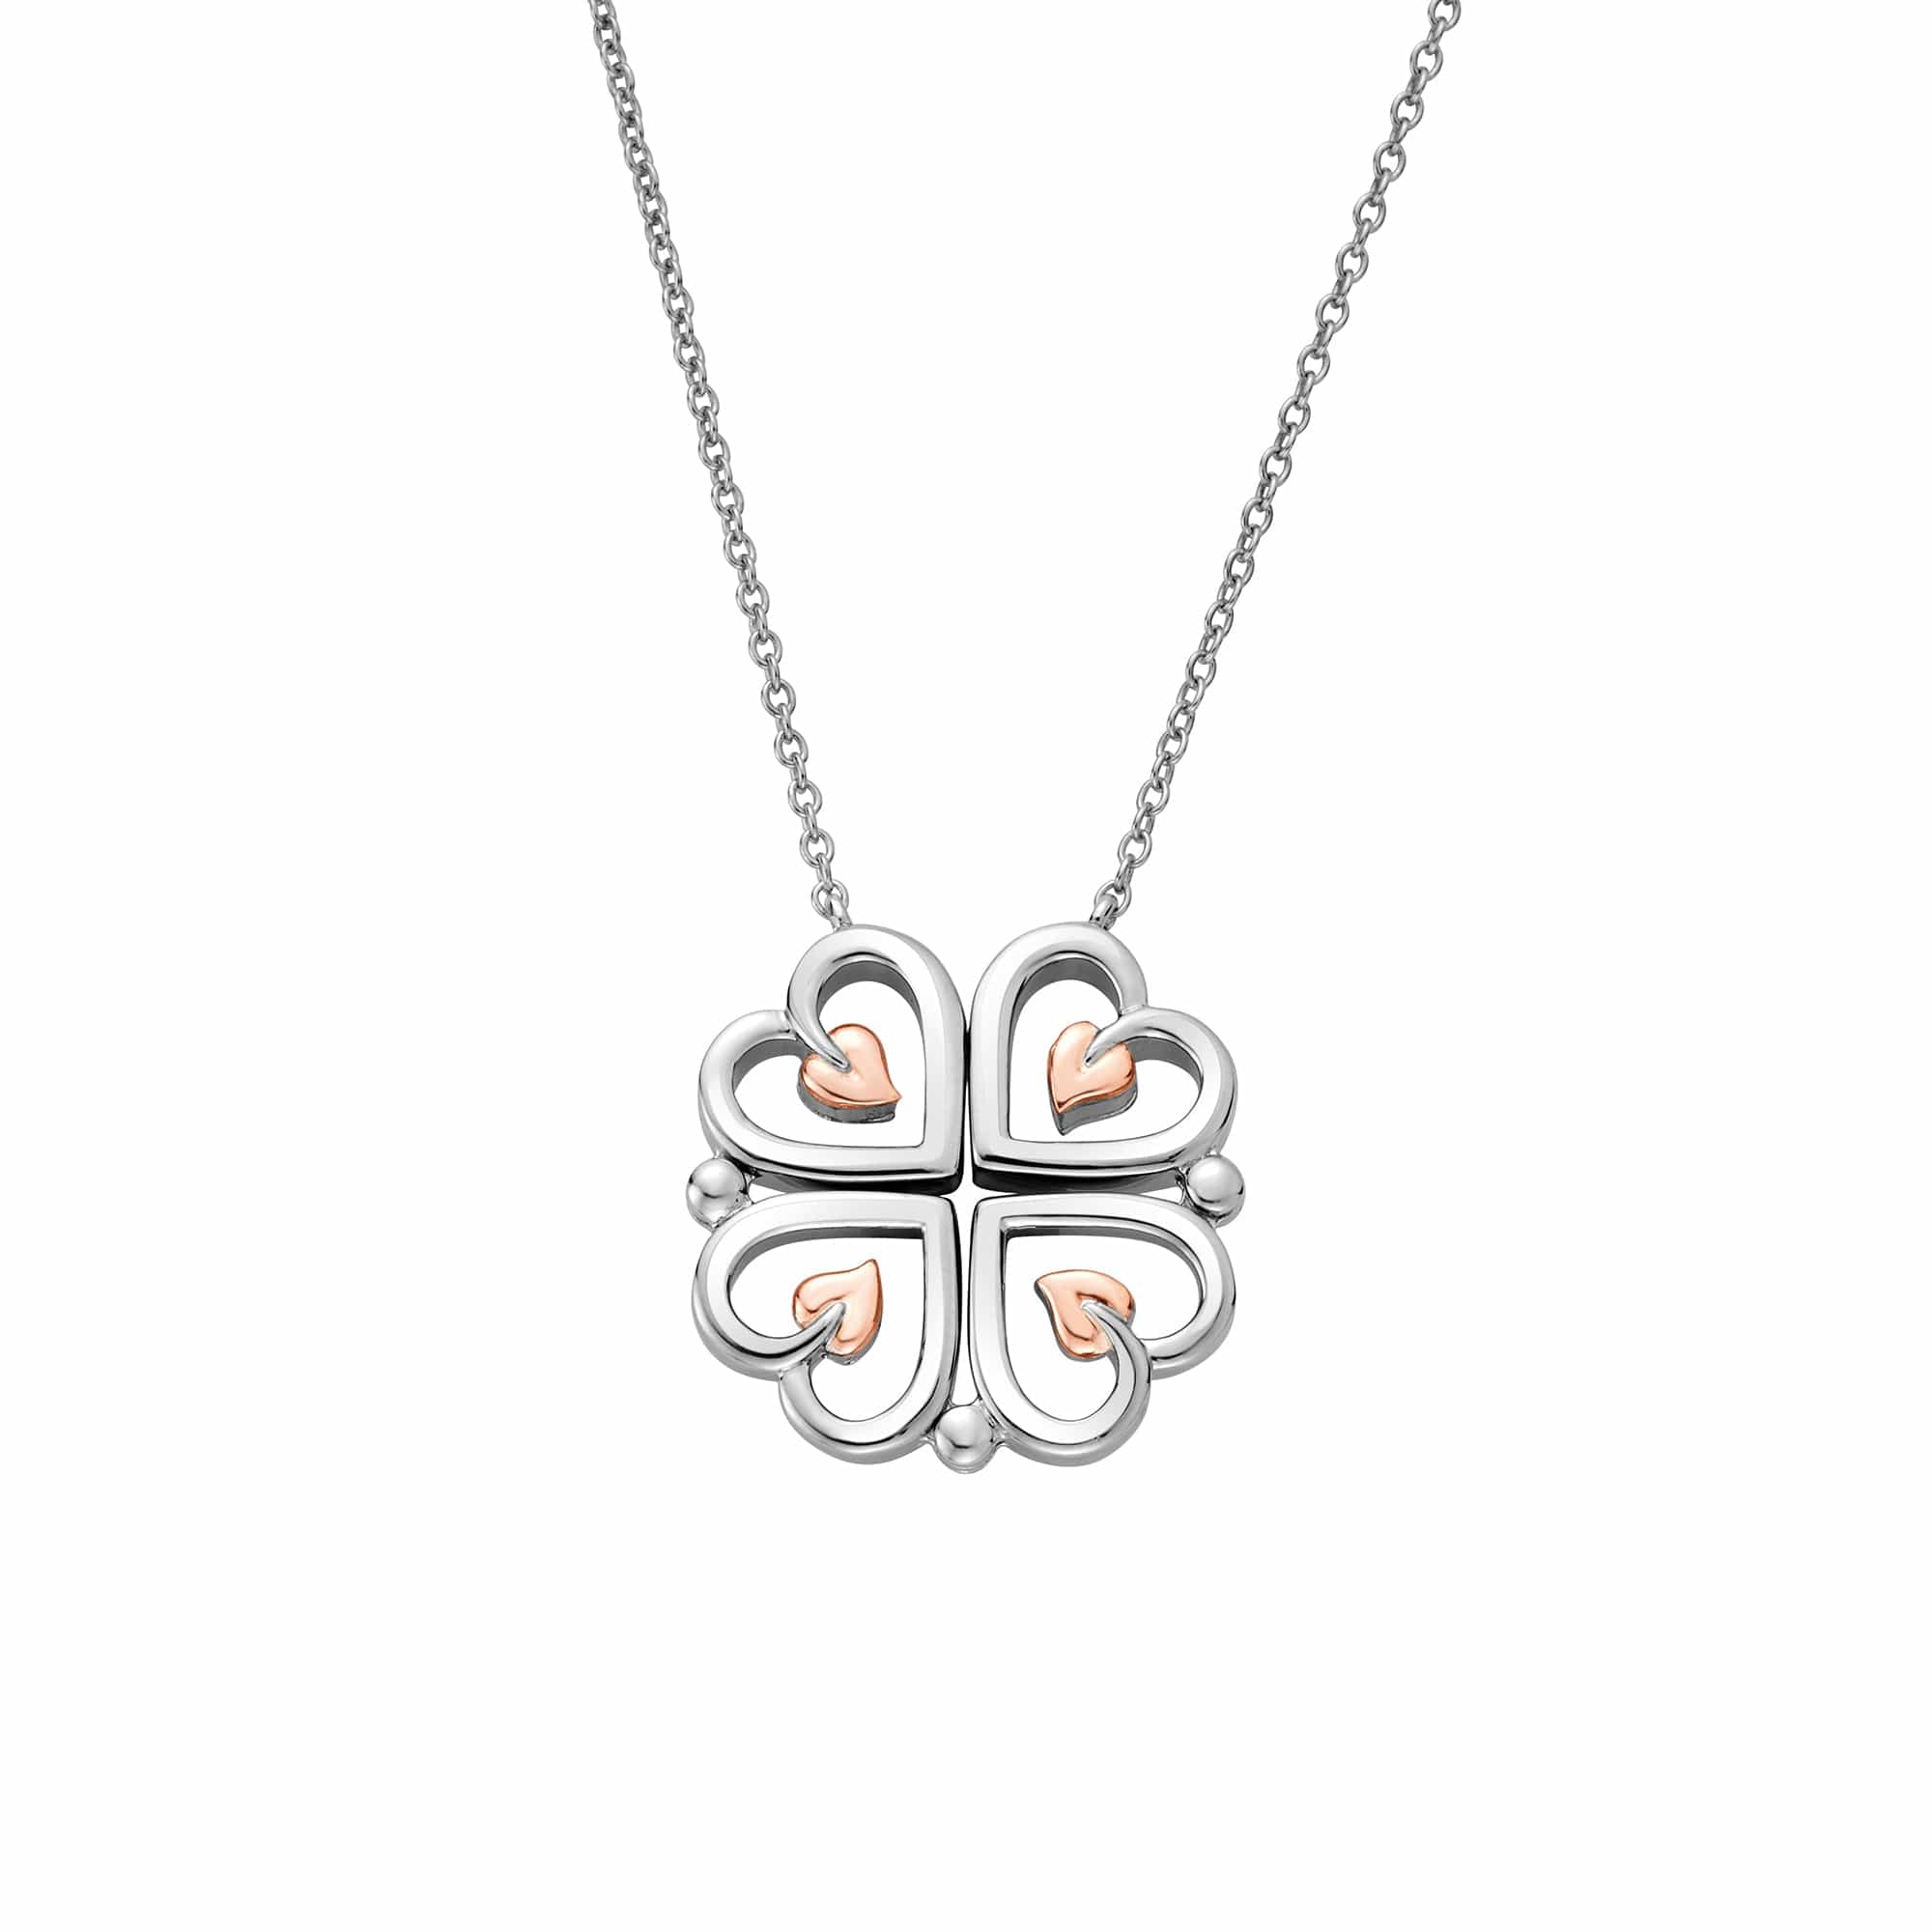 Four in One Glazed Ceramic Heart Necklace – JOY by Corrine Smith